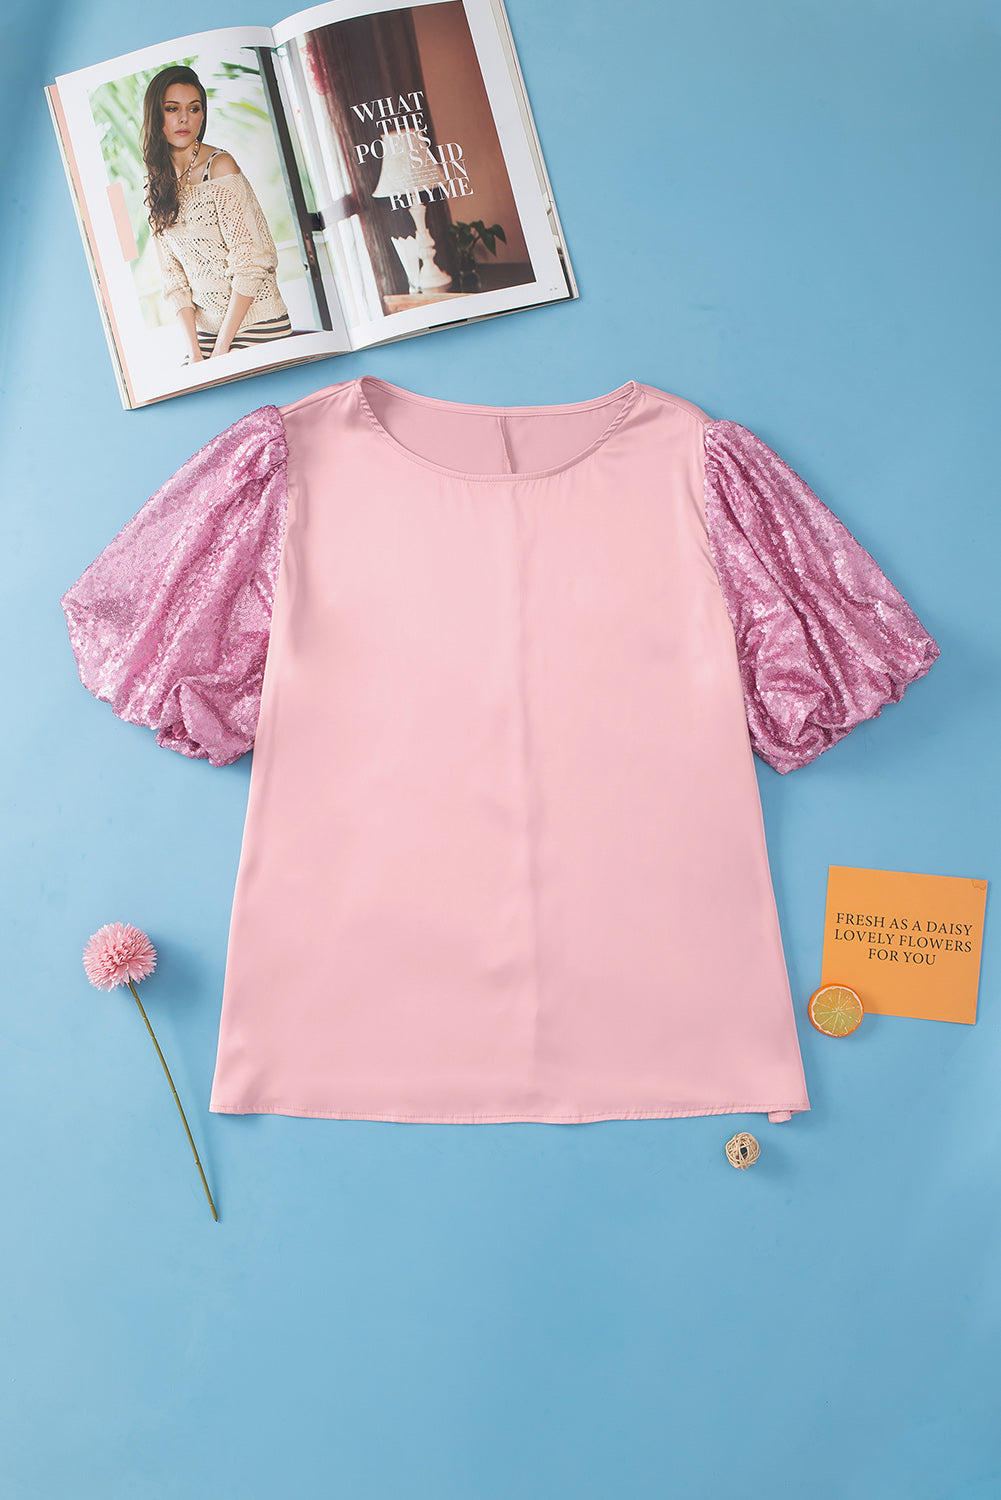 Rožnata majica velike velikosti z bleščicami in mehurčki